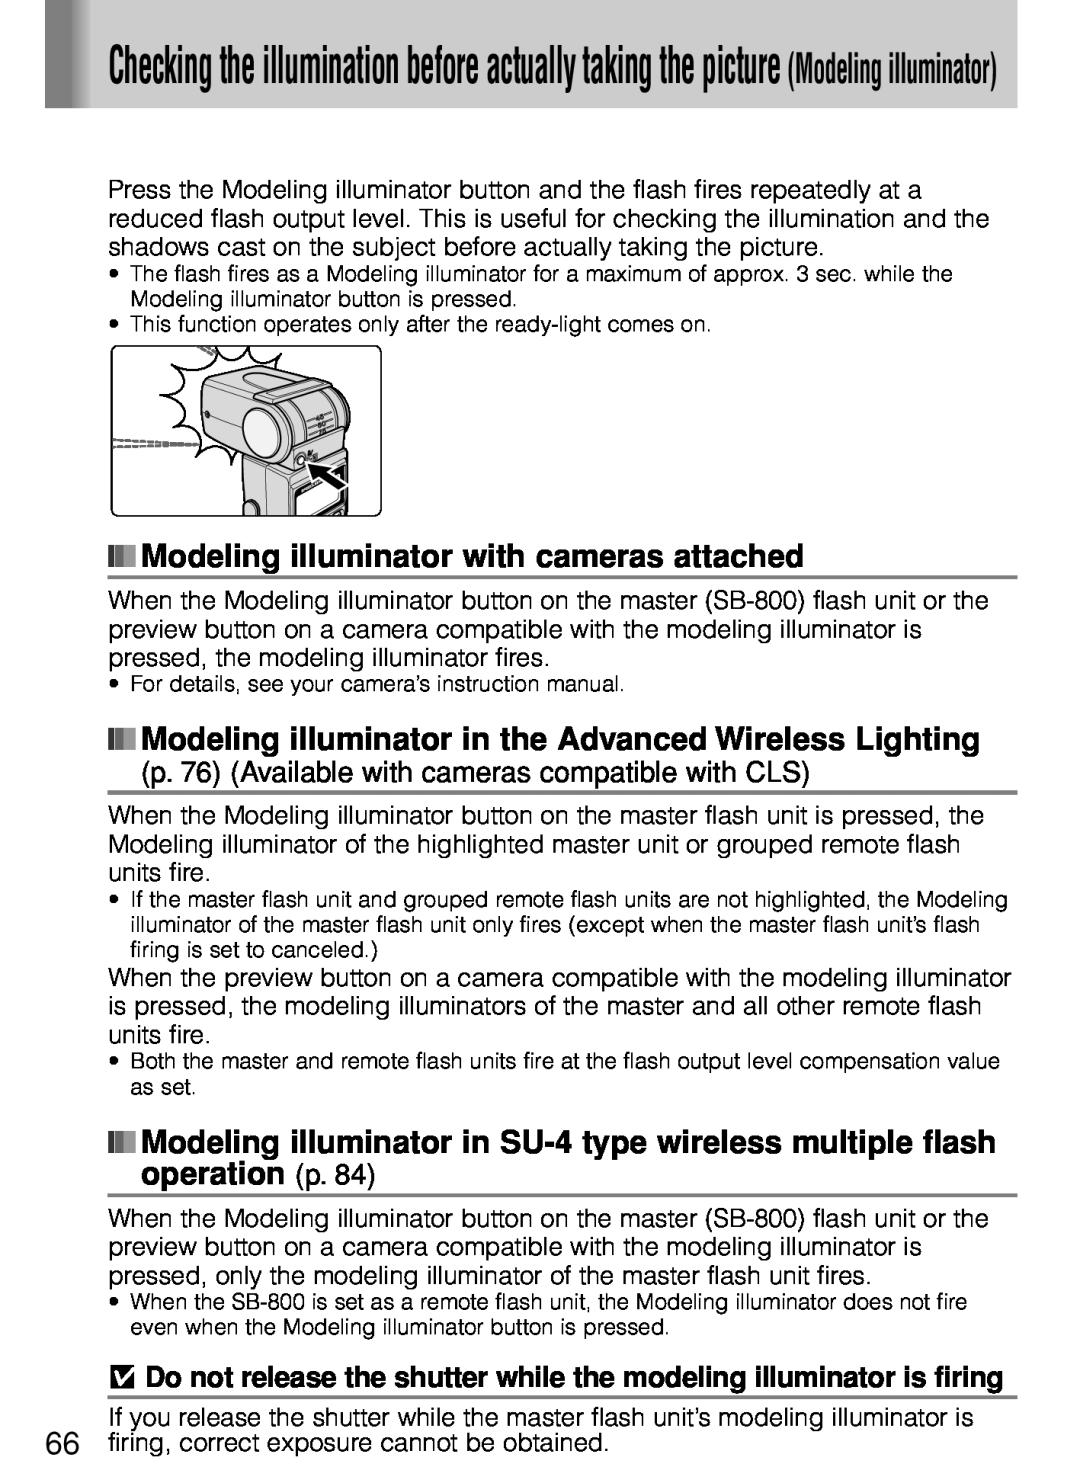 Nikon SB-800 Modeling illuminator with cameras attached, Modeling illuminator in the Advanced Wireless Lighting 